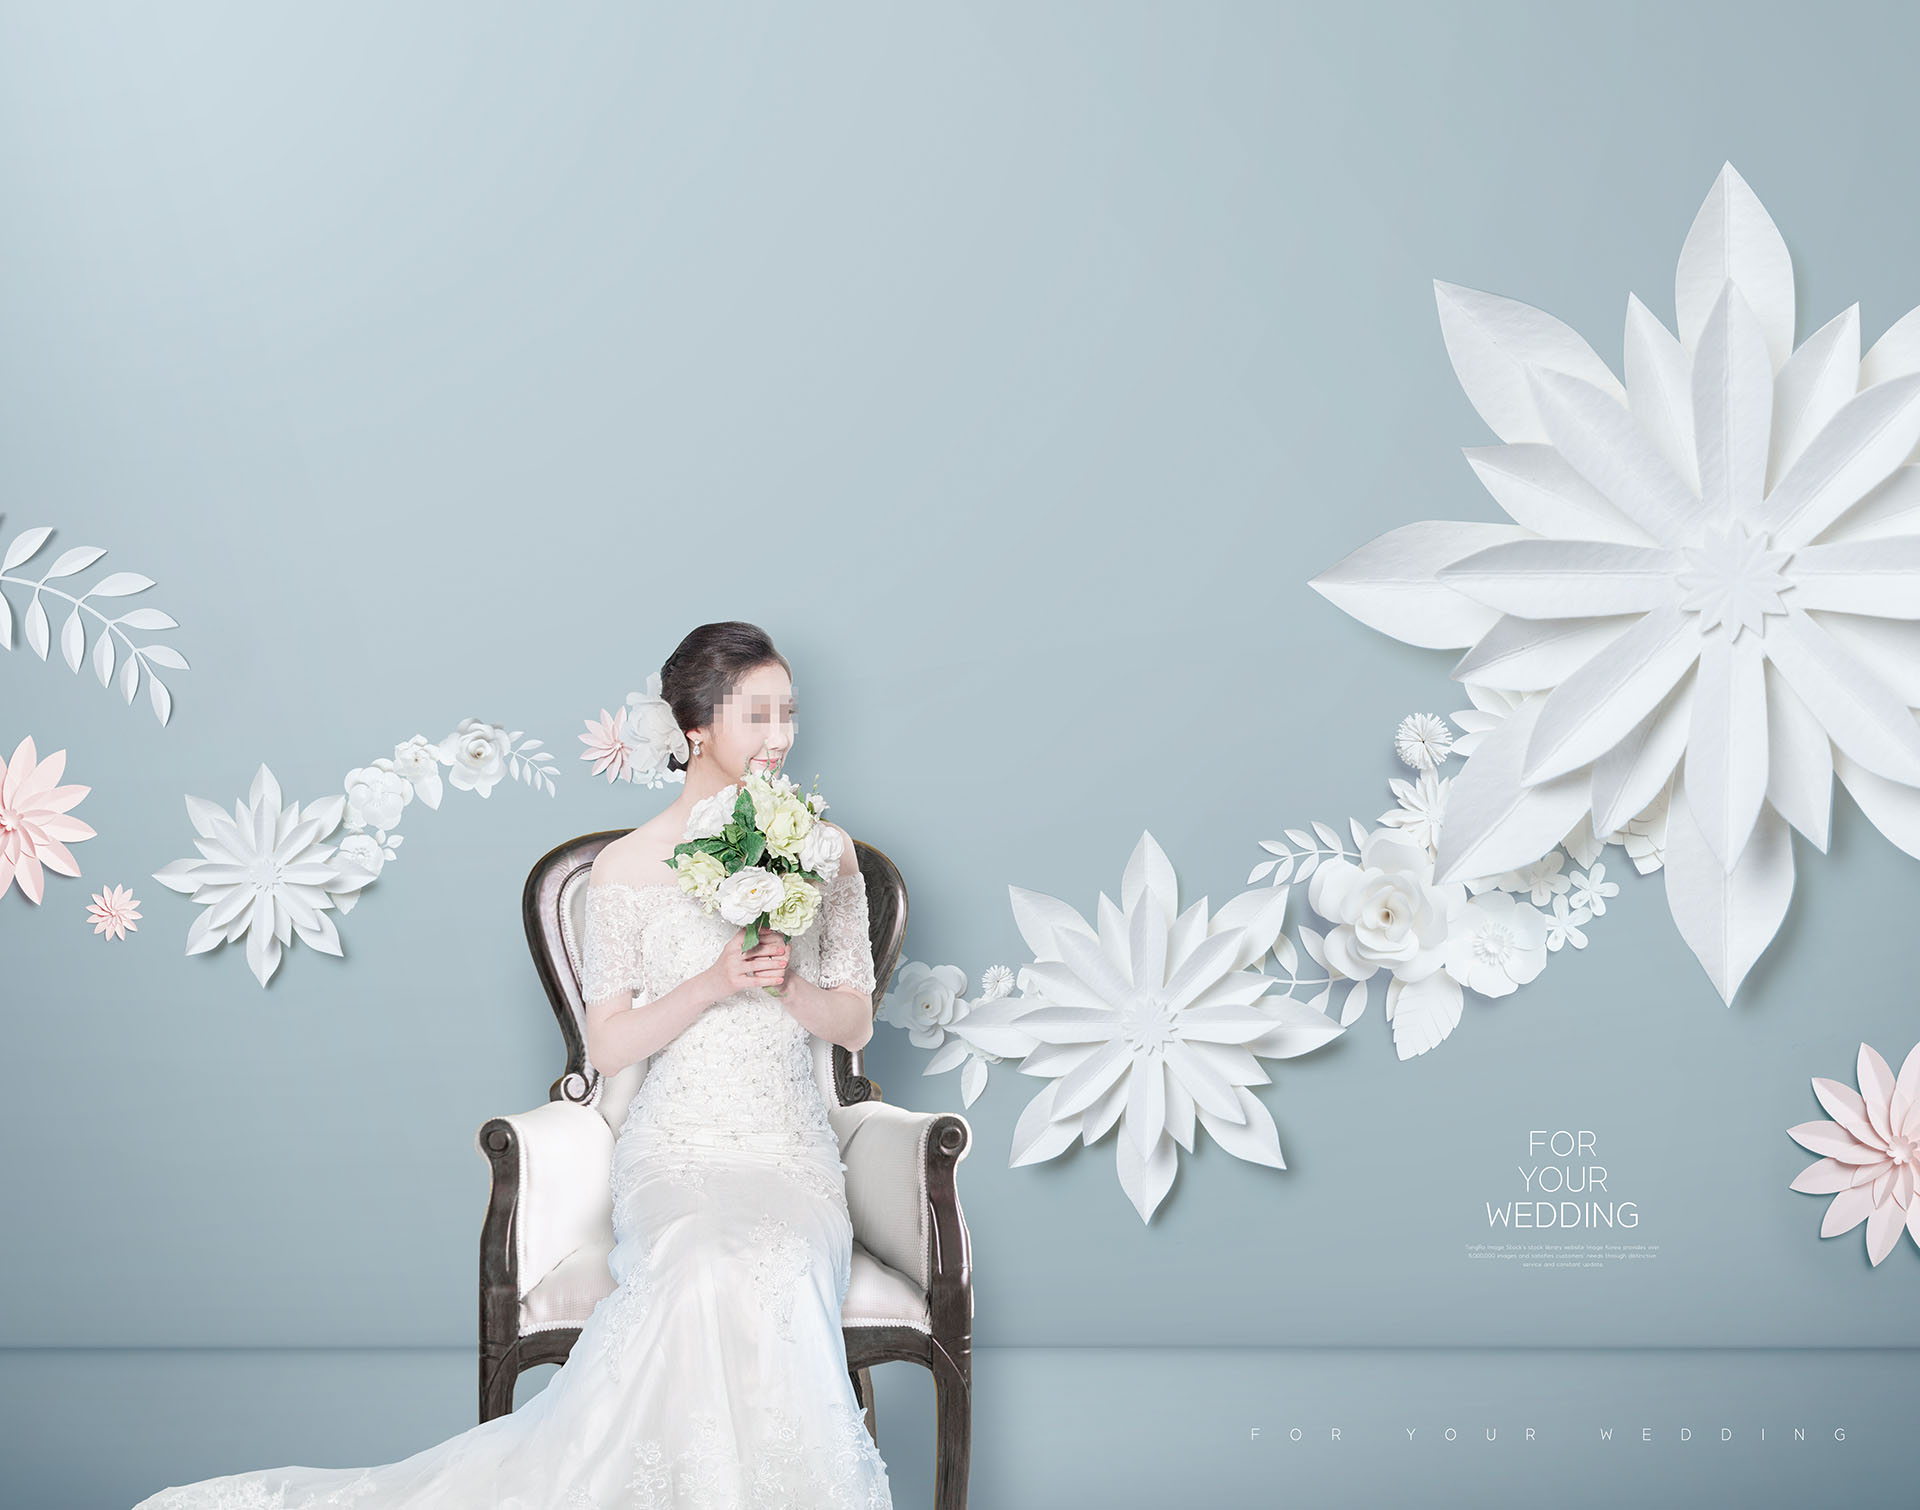 婚礼花卉创意场景海报PSD素材模板下载插图(4)